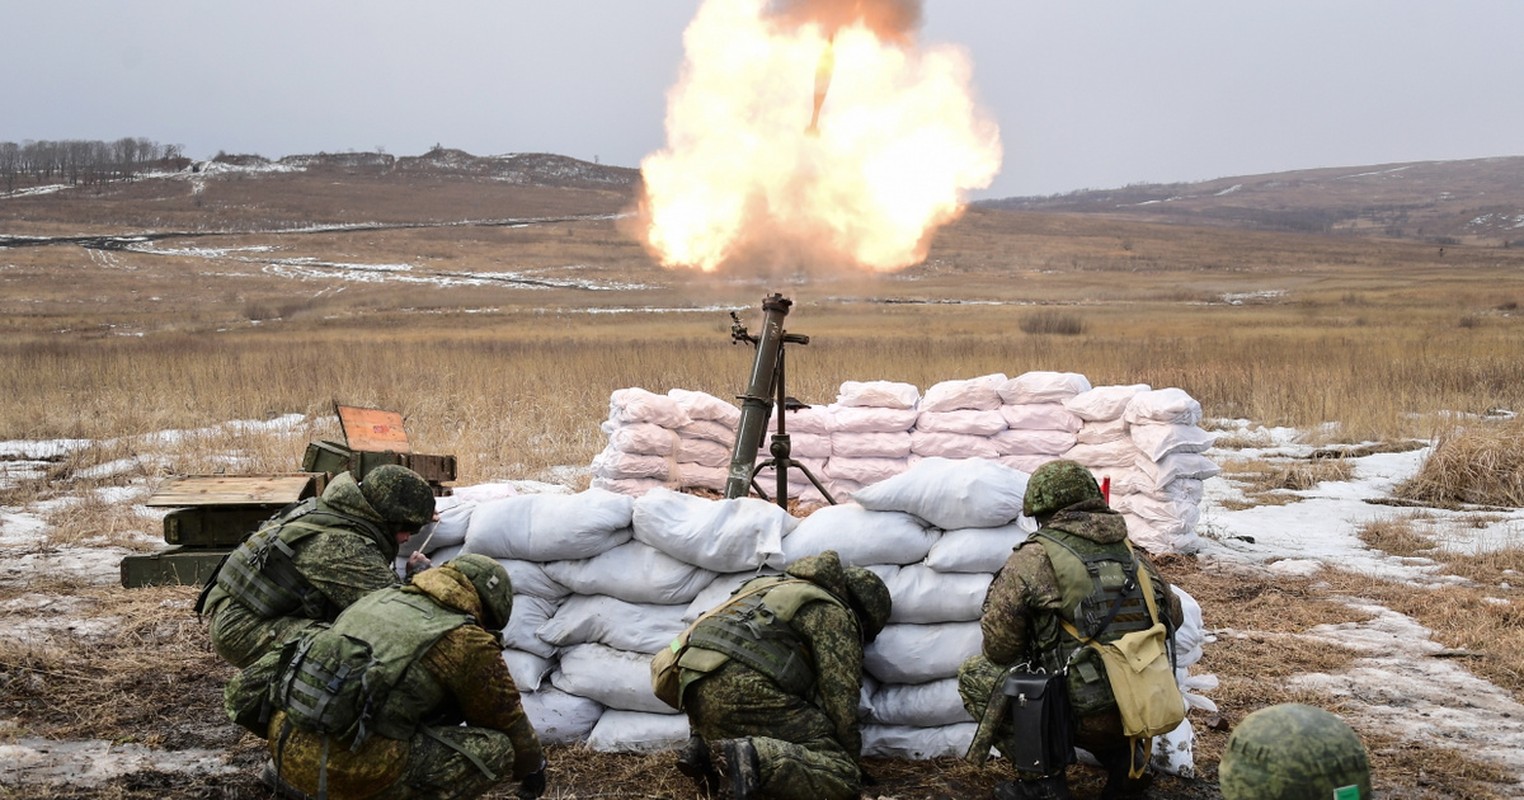 Xung dot bung phat: Donetsk hung chiu phao kich lon cua Ukraine-Hinh-7